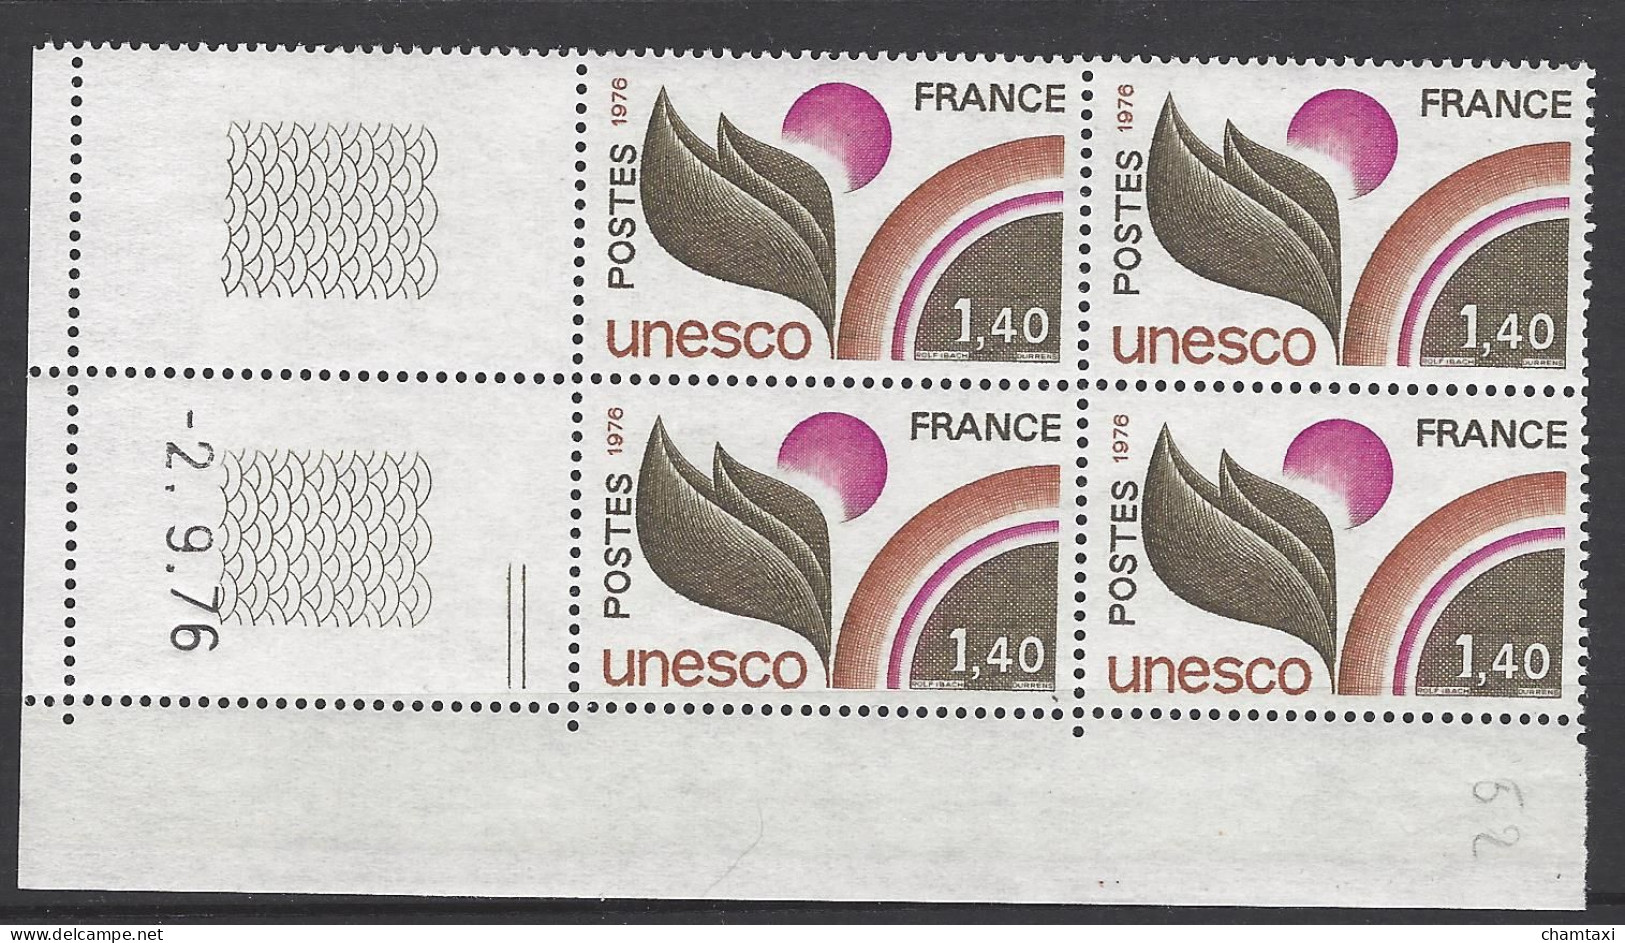 CD 52 FRANCE 1976 TIMBRE SERVICE UNESCO COIN DATE 52 : 2 / 9 / 76 - Servizio